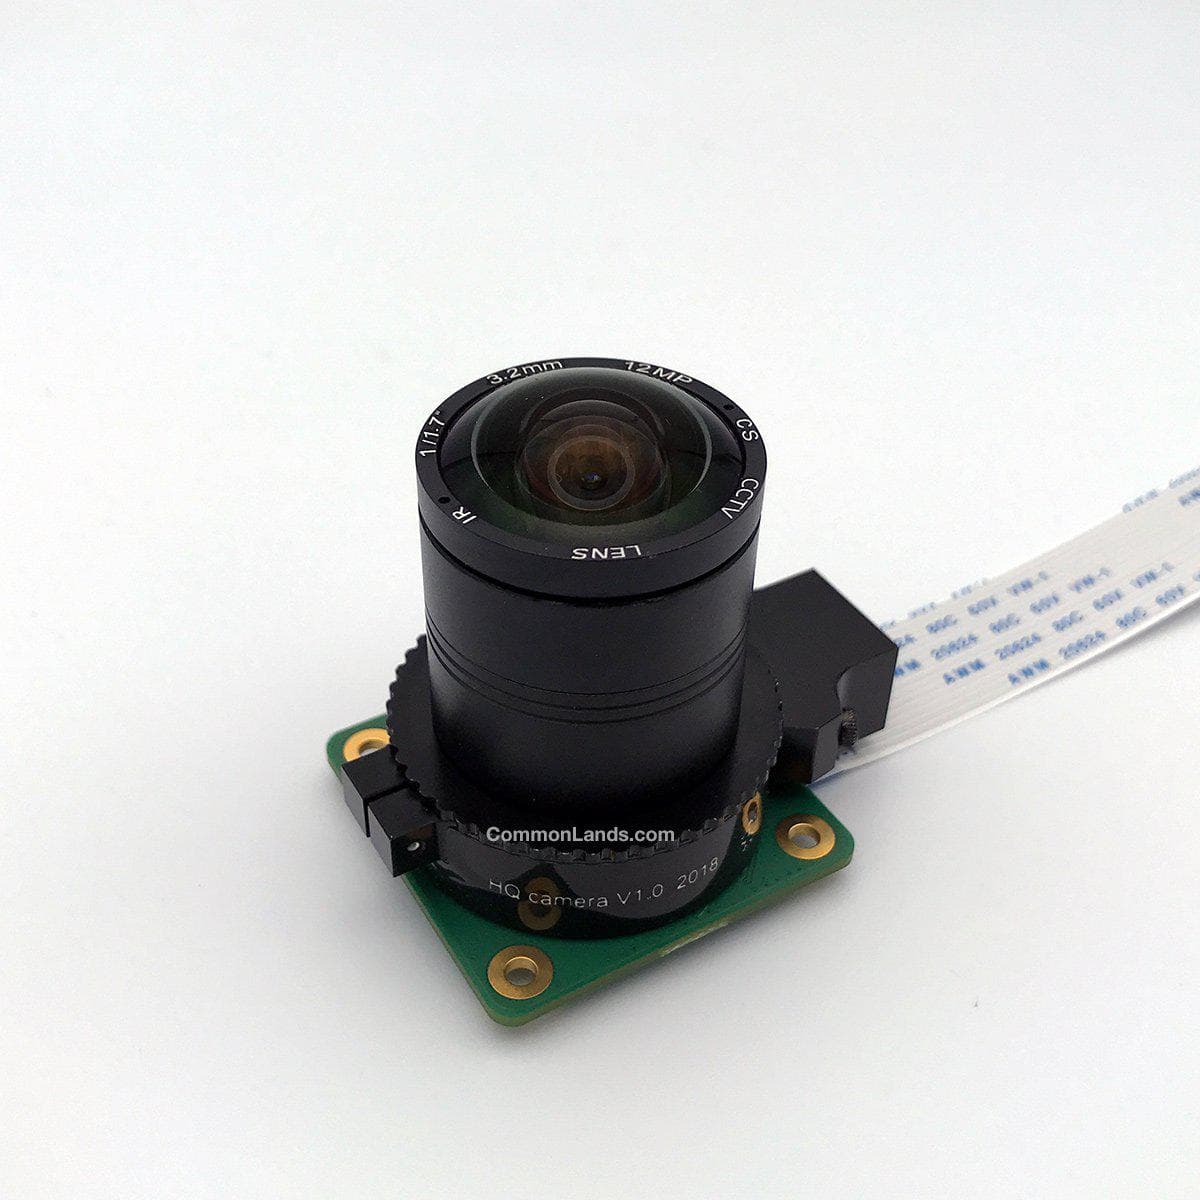 CommonLands CIL03.2-F1.8-CSNOIR 3.2mm EFLレンズをRaspberry Pi HQカメラに装着して撮影しています。